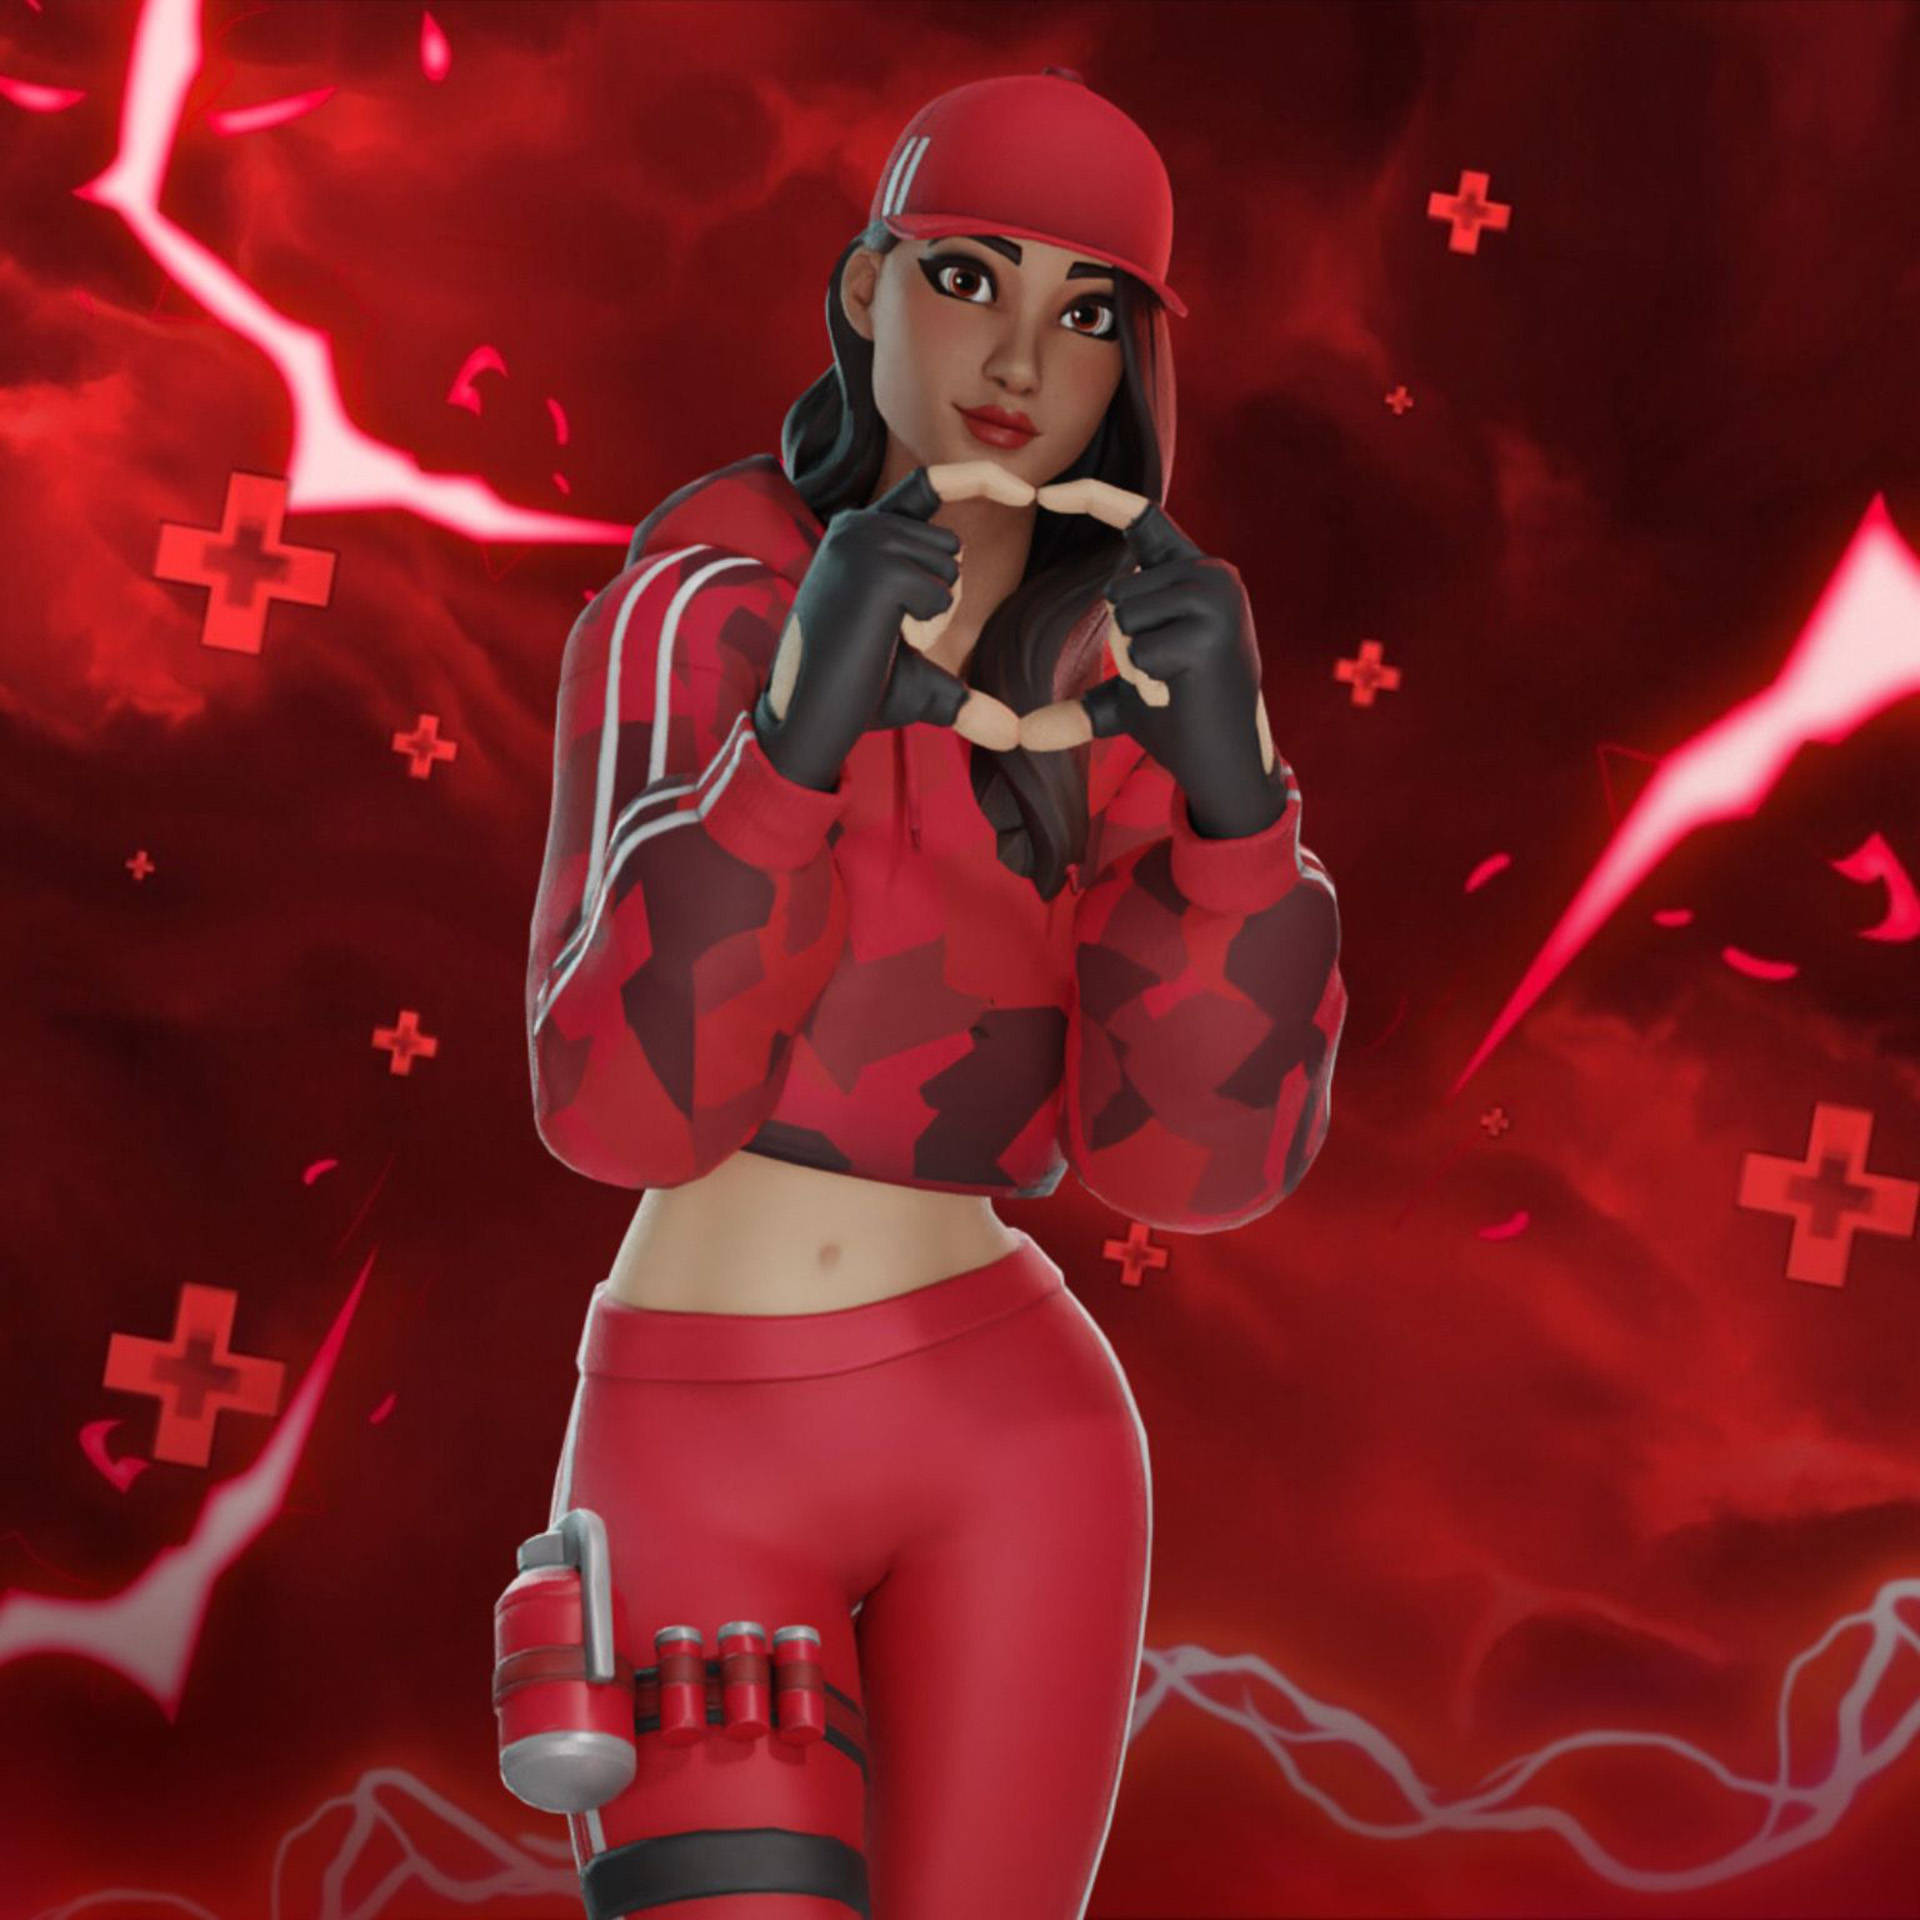 Ruby Fortnite Red Lightning Artwork Background